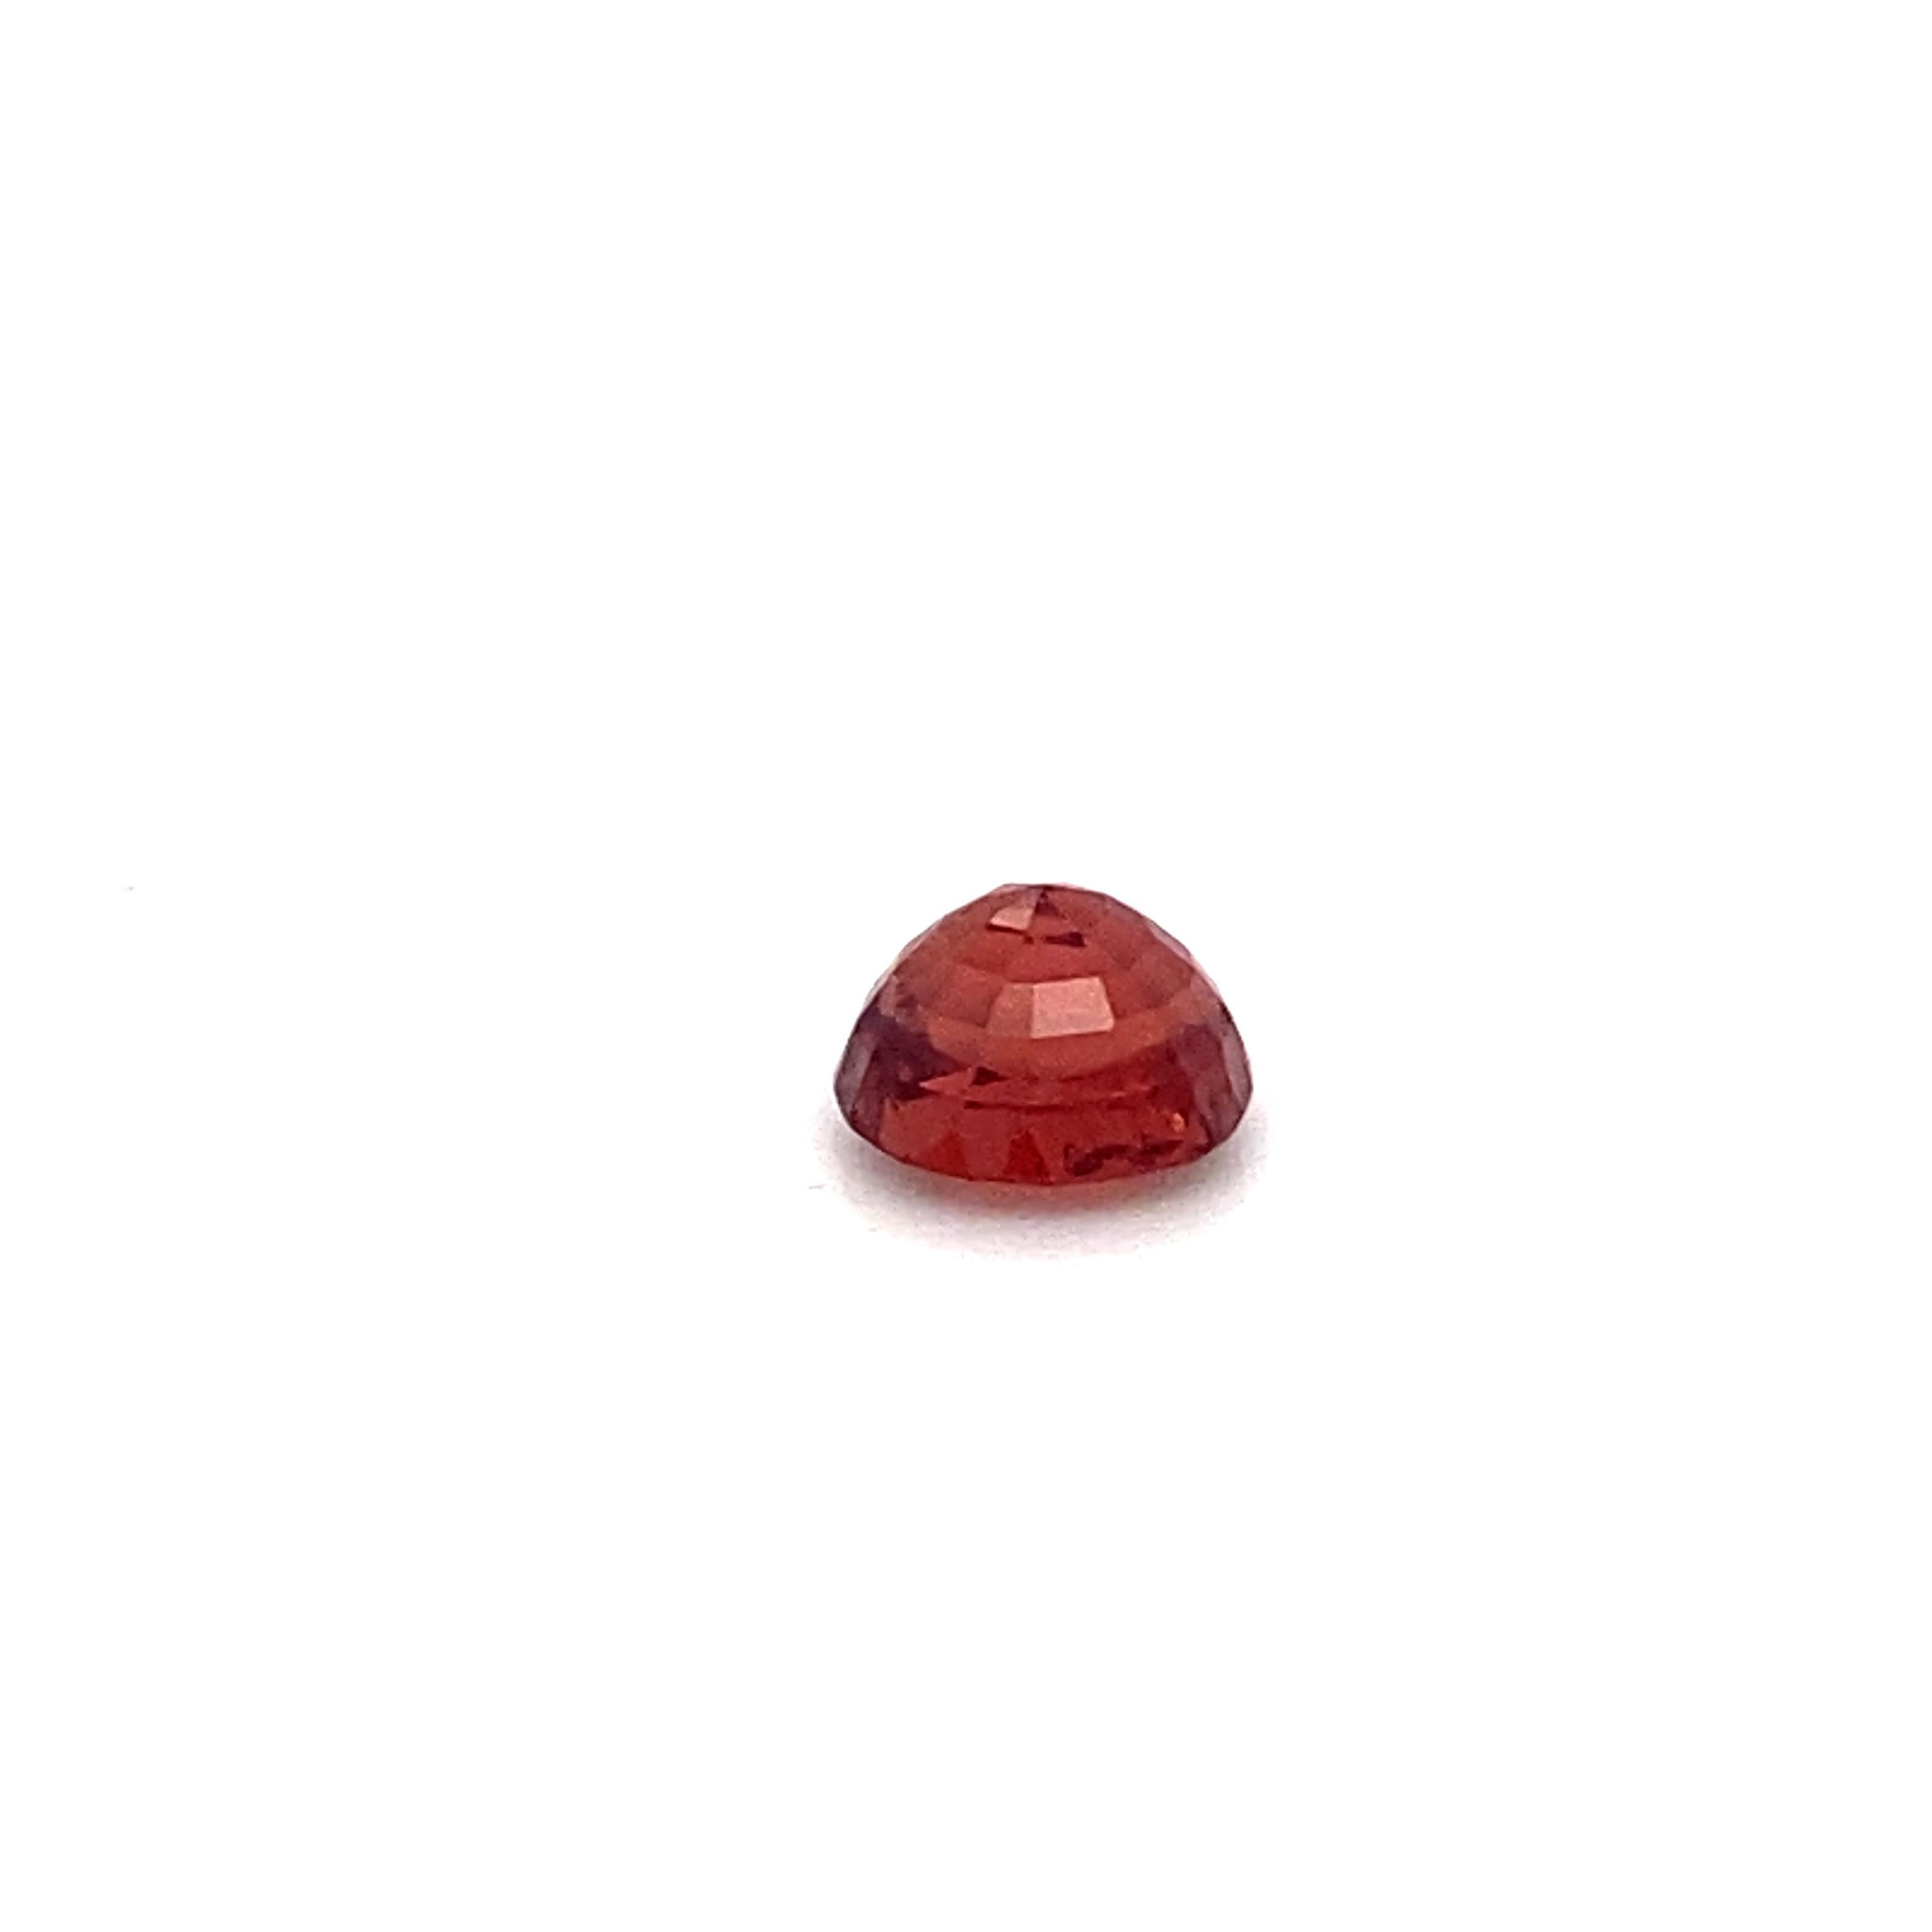 2.25 Carat Oval Shape Natural Red Spinel Loose Gemstone  11